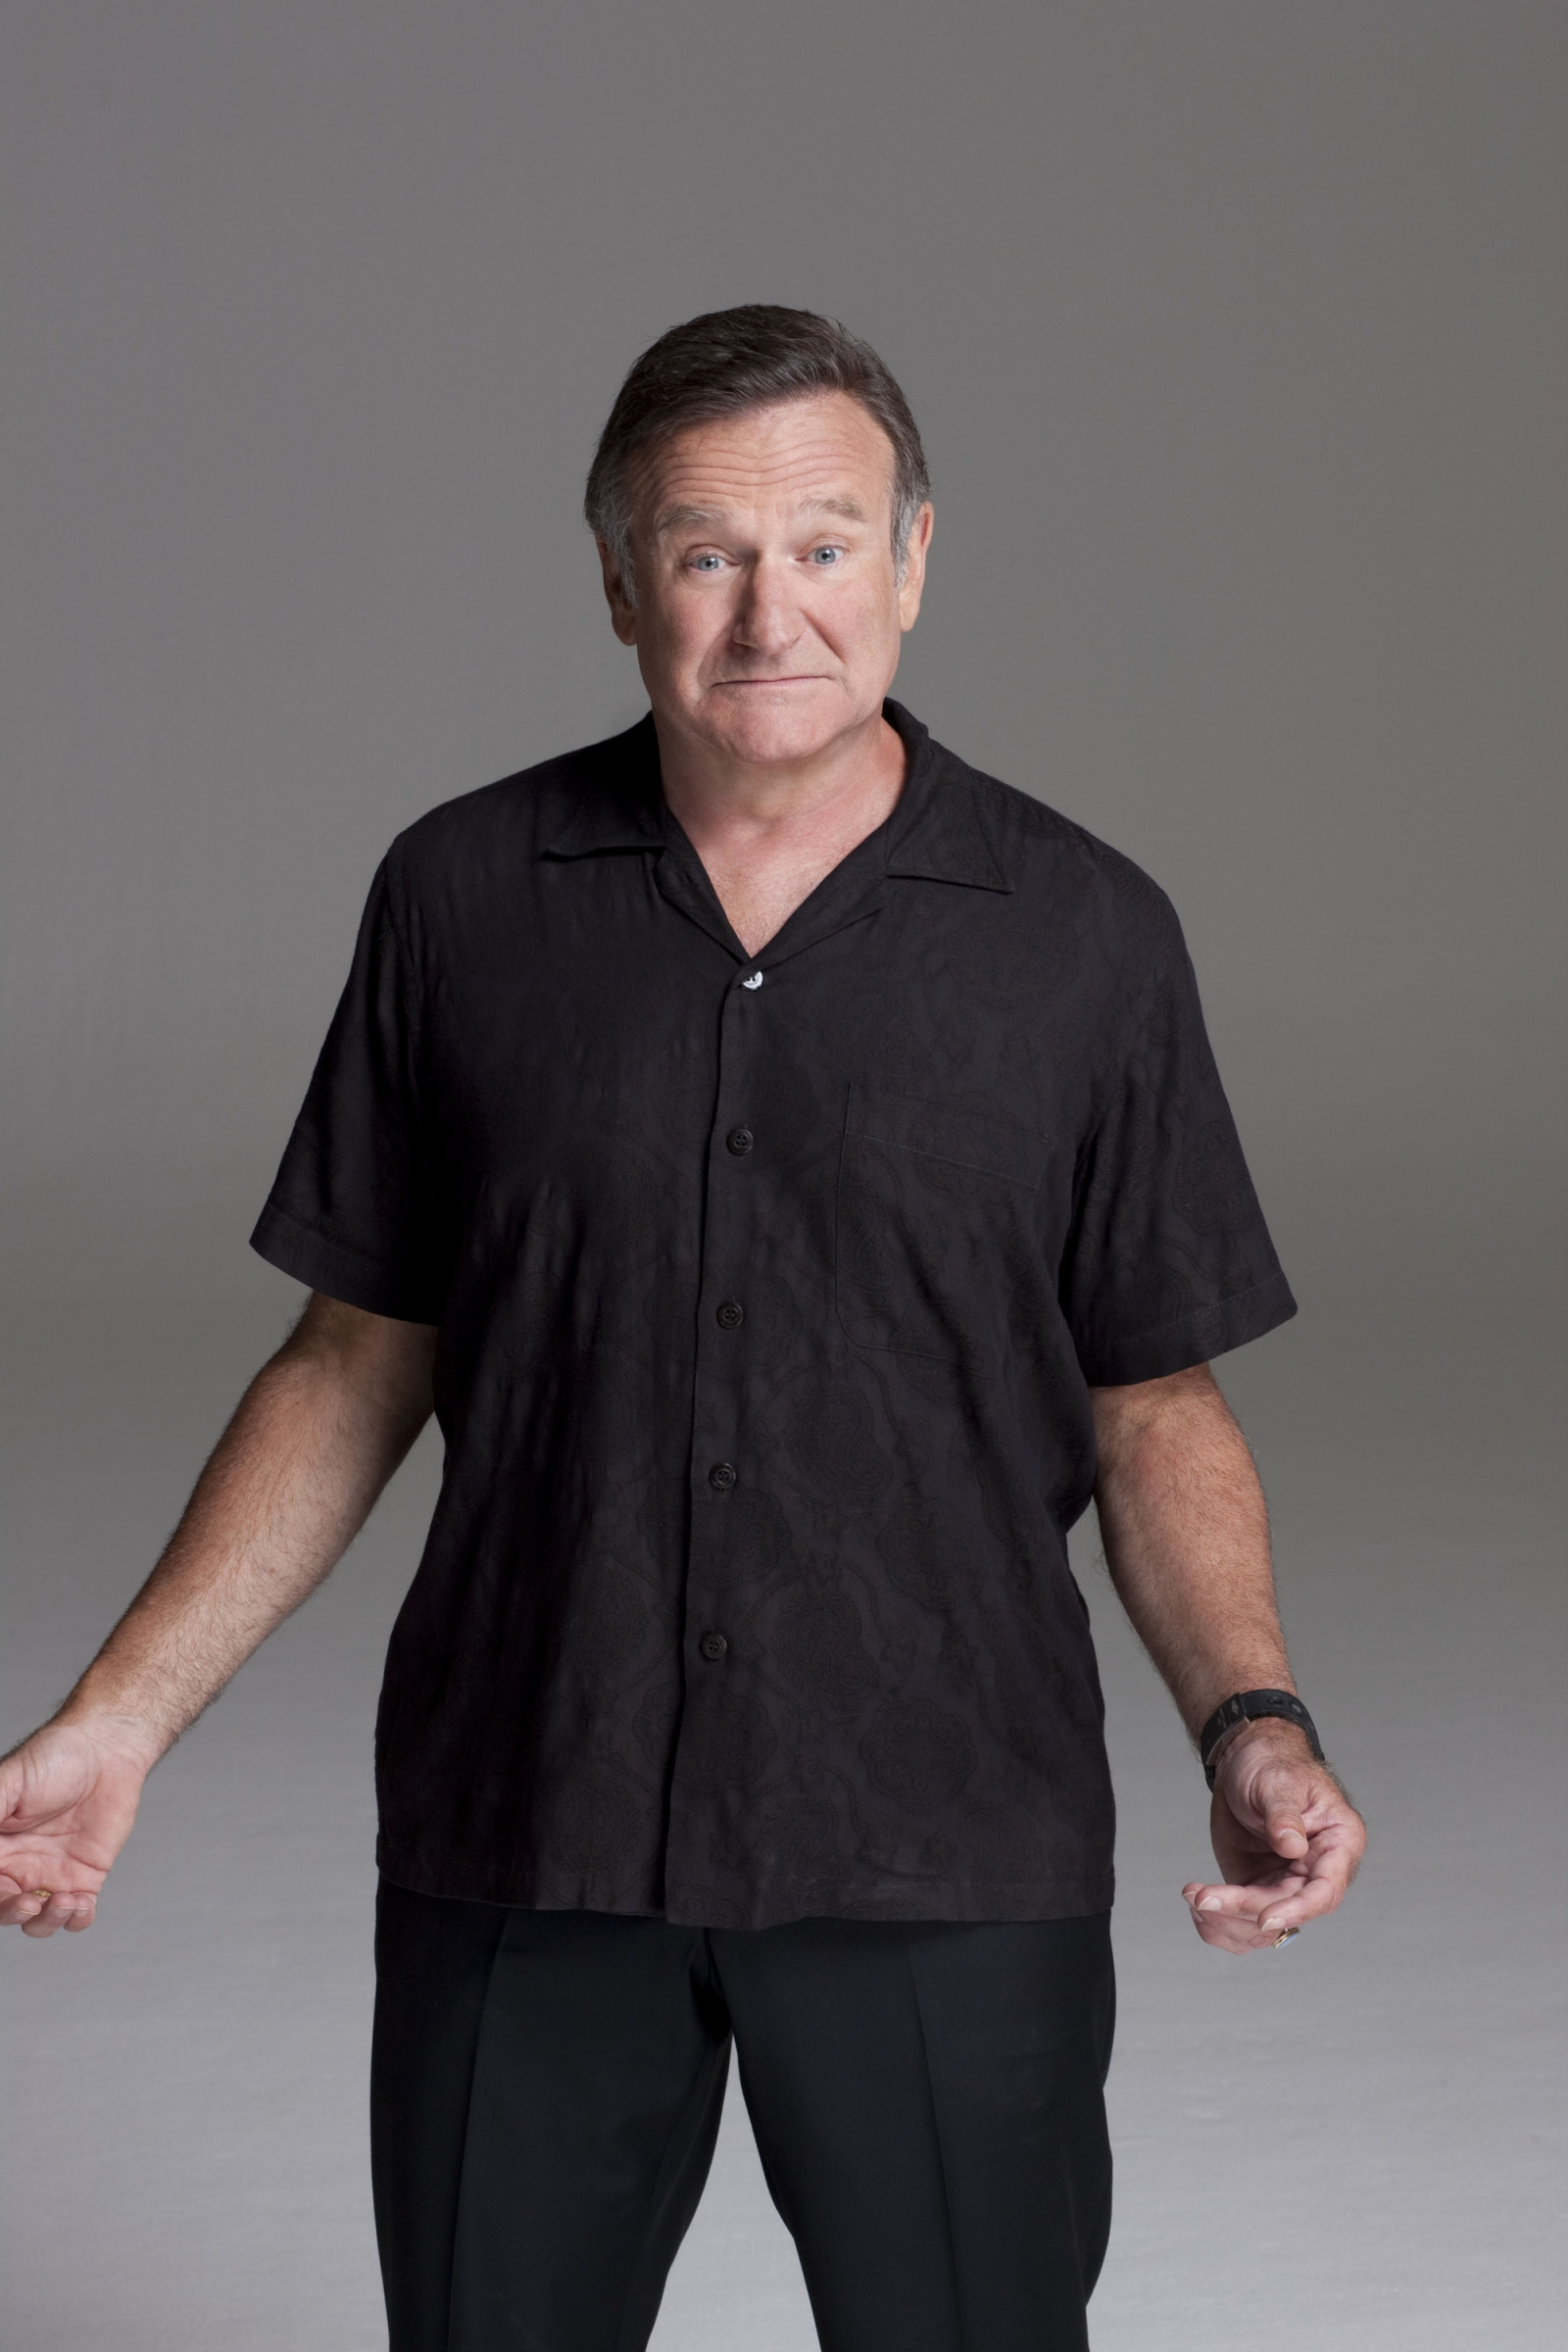 Робин Вильямс (Robin Williams)